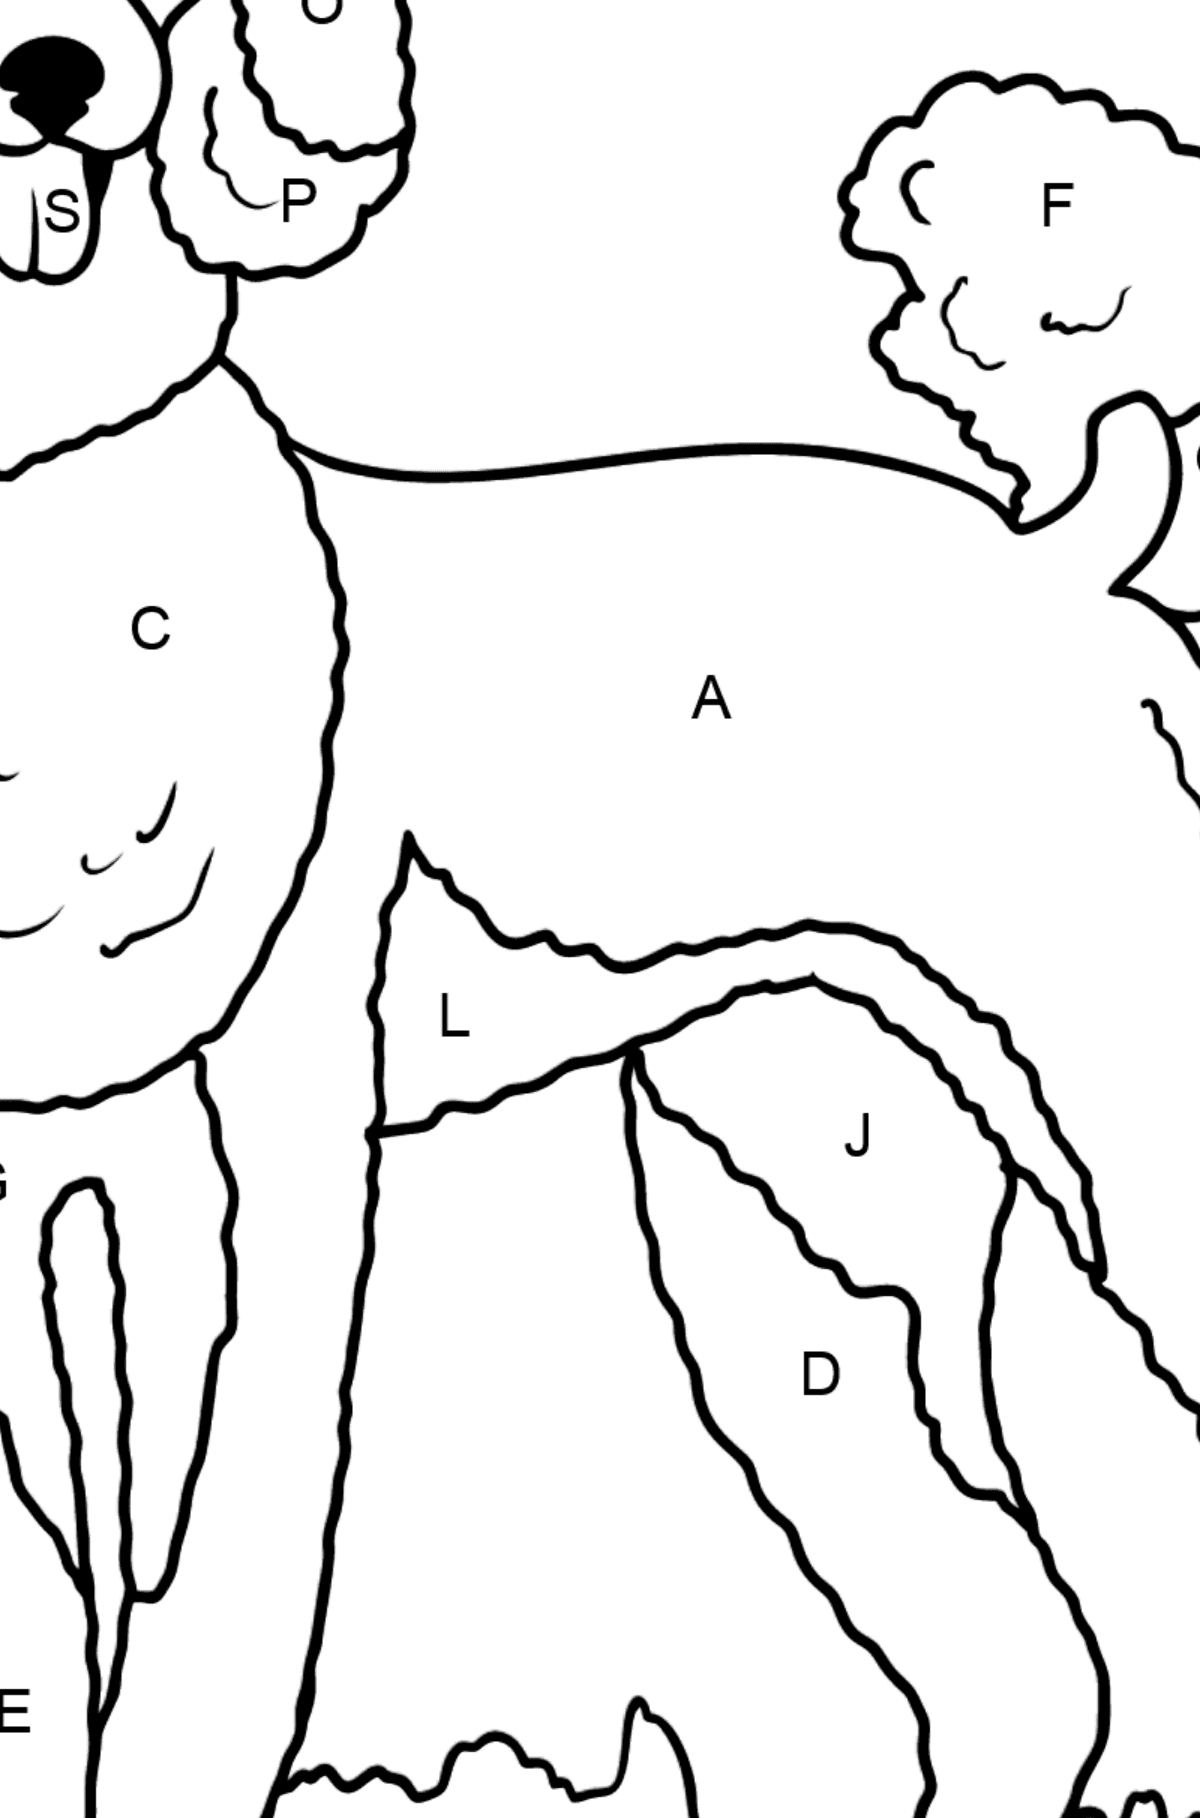 Desenho para colorir do poodle - Colorir por Letras para Crianças